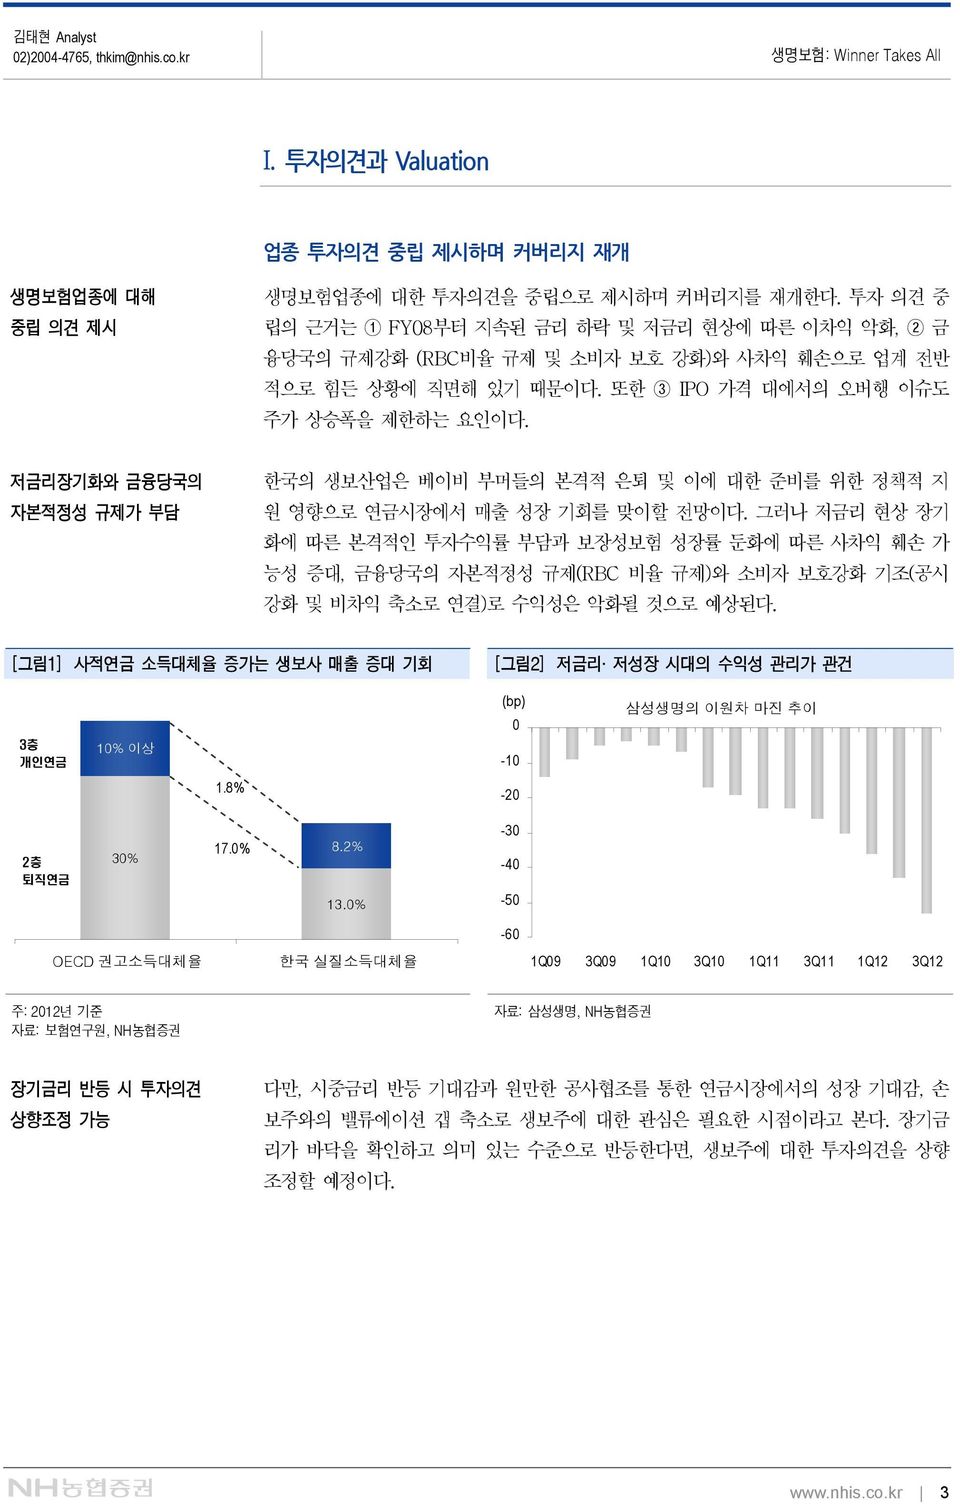 저금리장기화와 금융당국의 자본적정성 규제가 부담 한국의 생보산업은 베이비 부머들의 본격적 은퇴 및 이에 대한 준비를 위한 정책적 지 원 영향으로 연금시장에서 매출 성장 기회를 맞이할 전망이다.